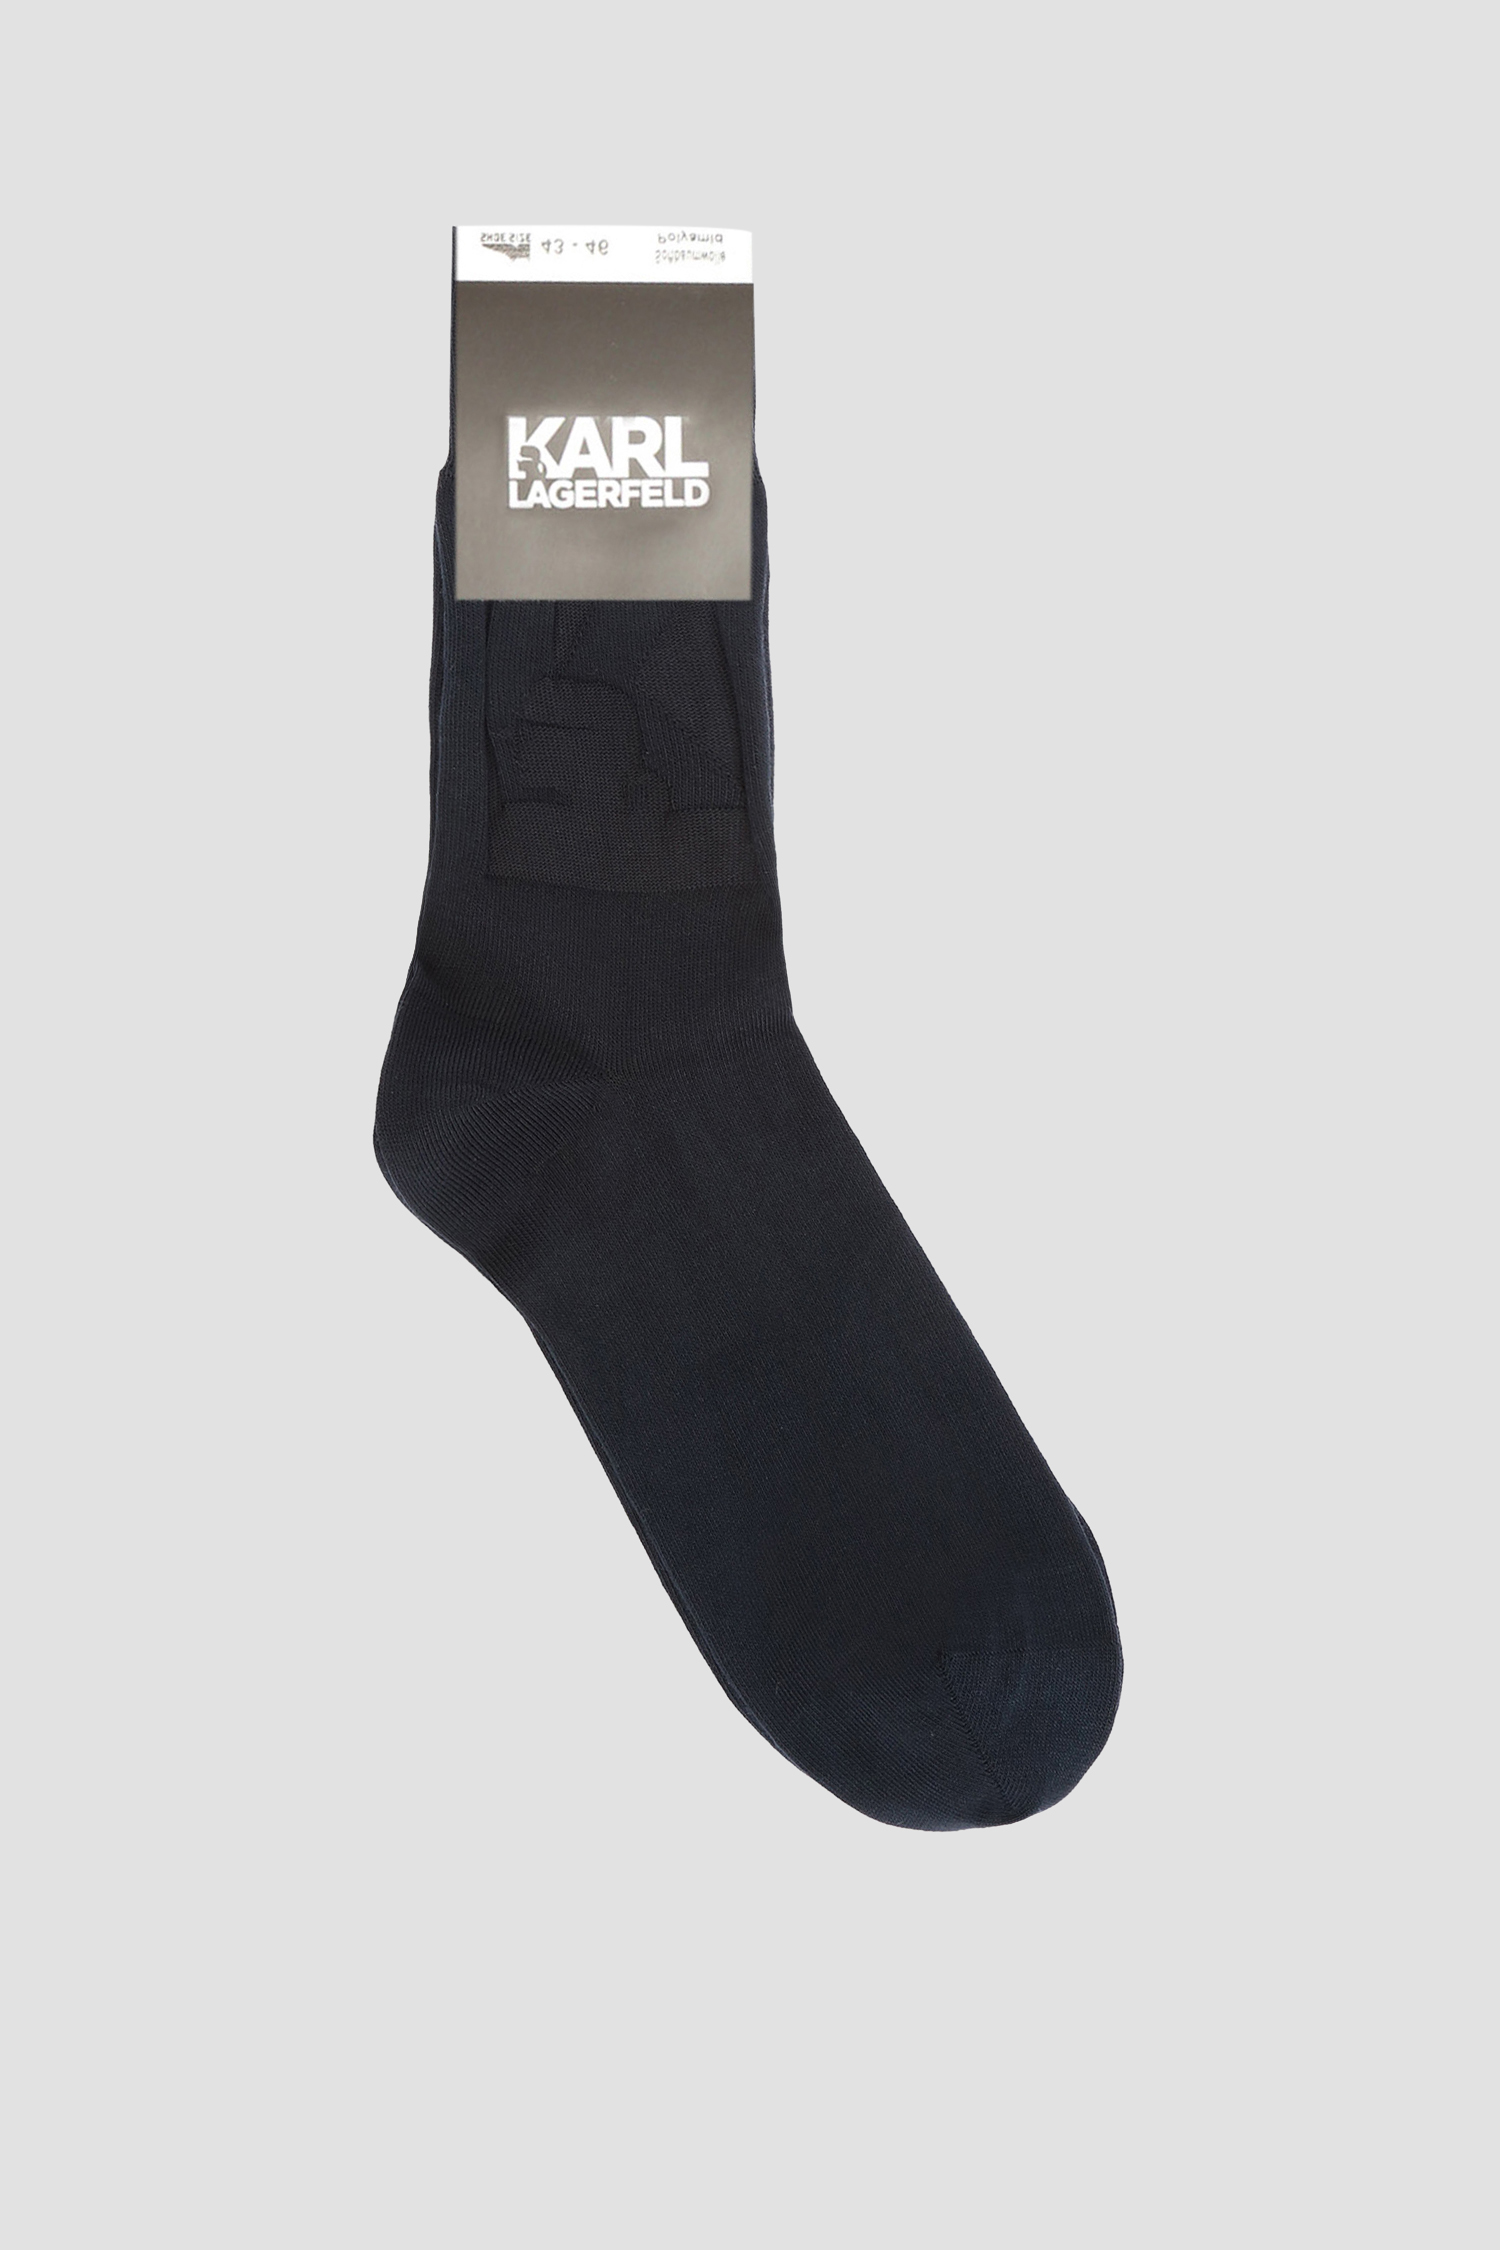 Чоловічі темно-сині шкарпетки Karl Lagerfeld 582101.805503;690